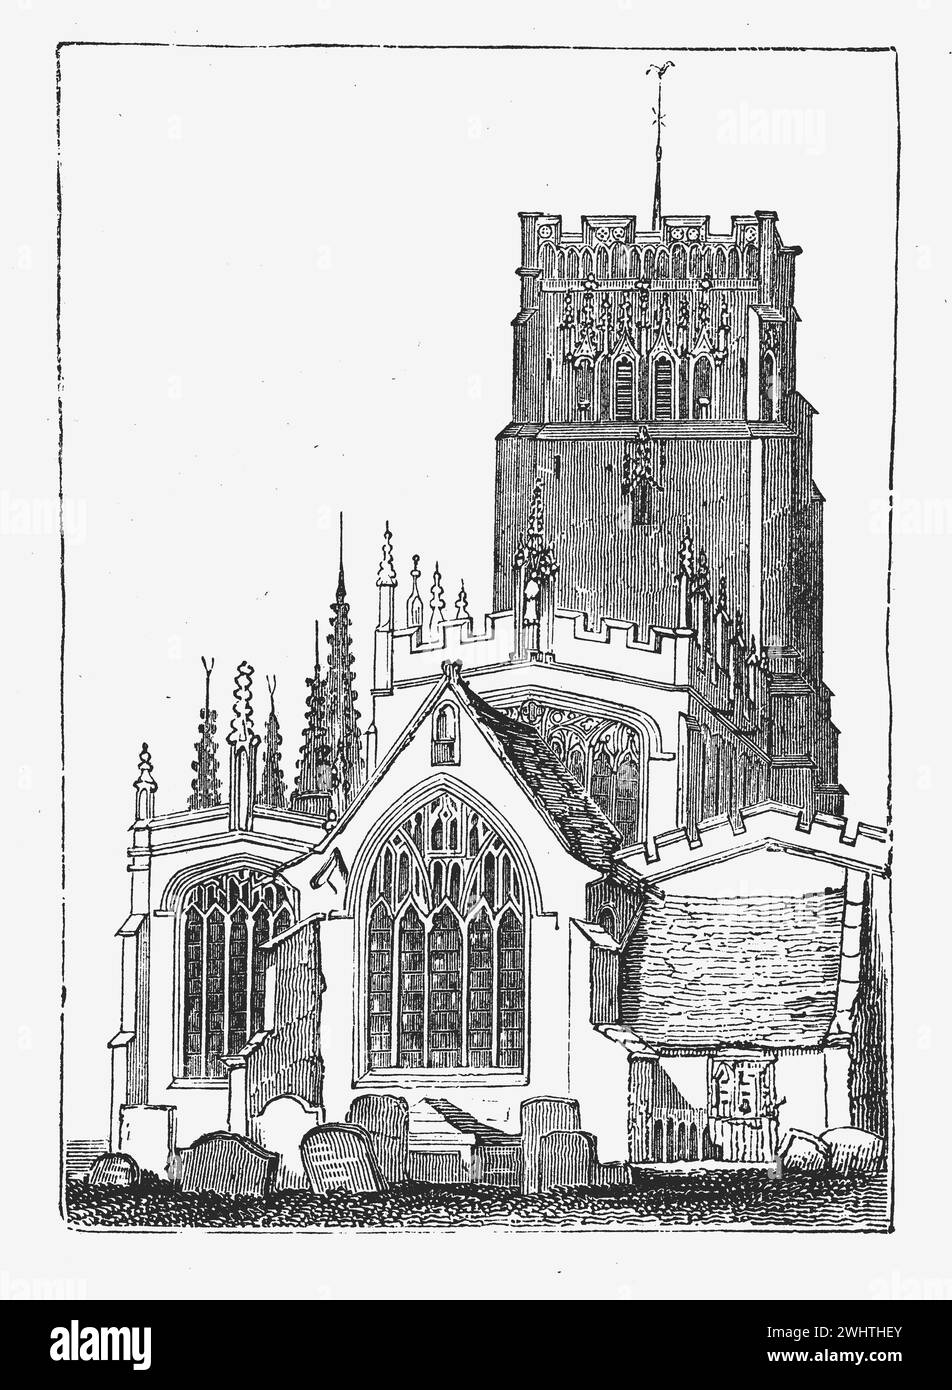 Iglesia de San Pedro y San Pablo, Northleach, Gloucestershire. Ilustración en blanco y negro de la "vieja Inglaterra" publicada por James Sangster en 1860. Foto de stock